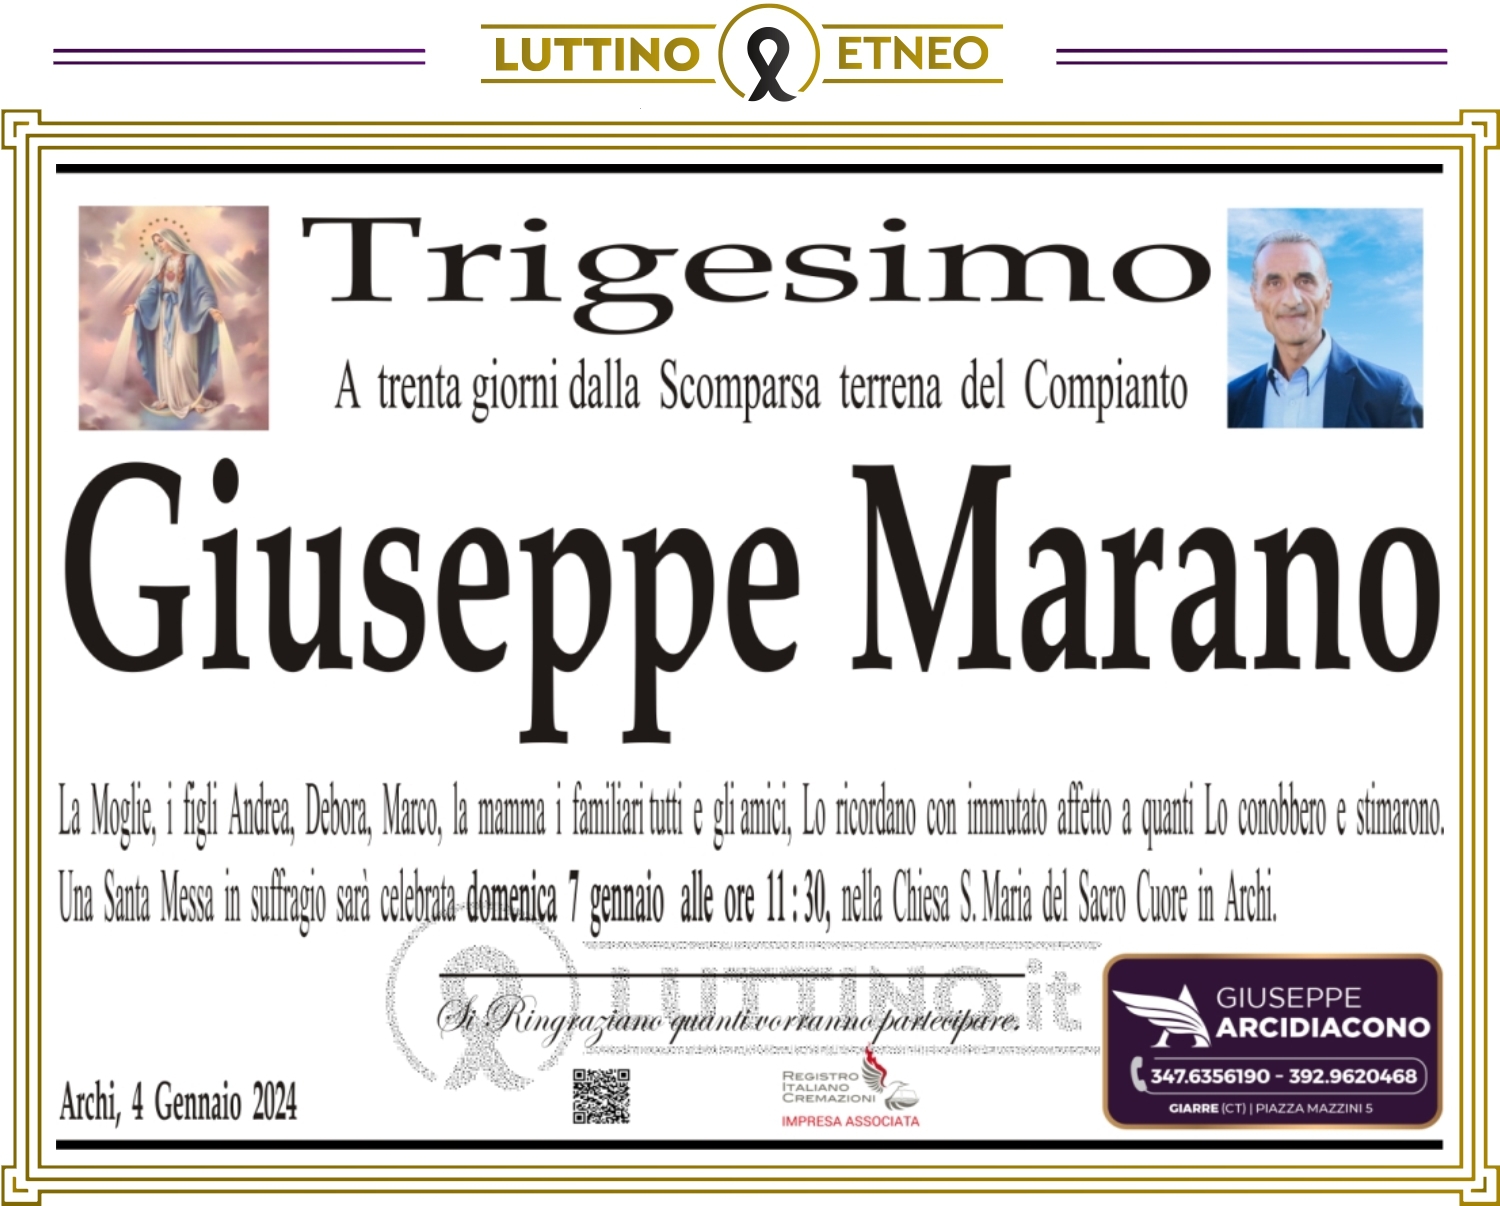 Giuseppe Marano